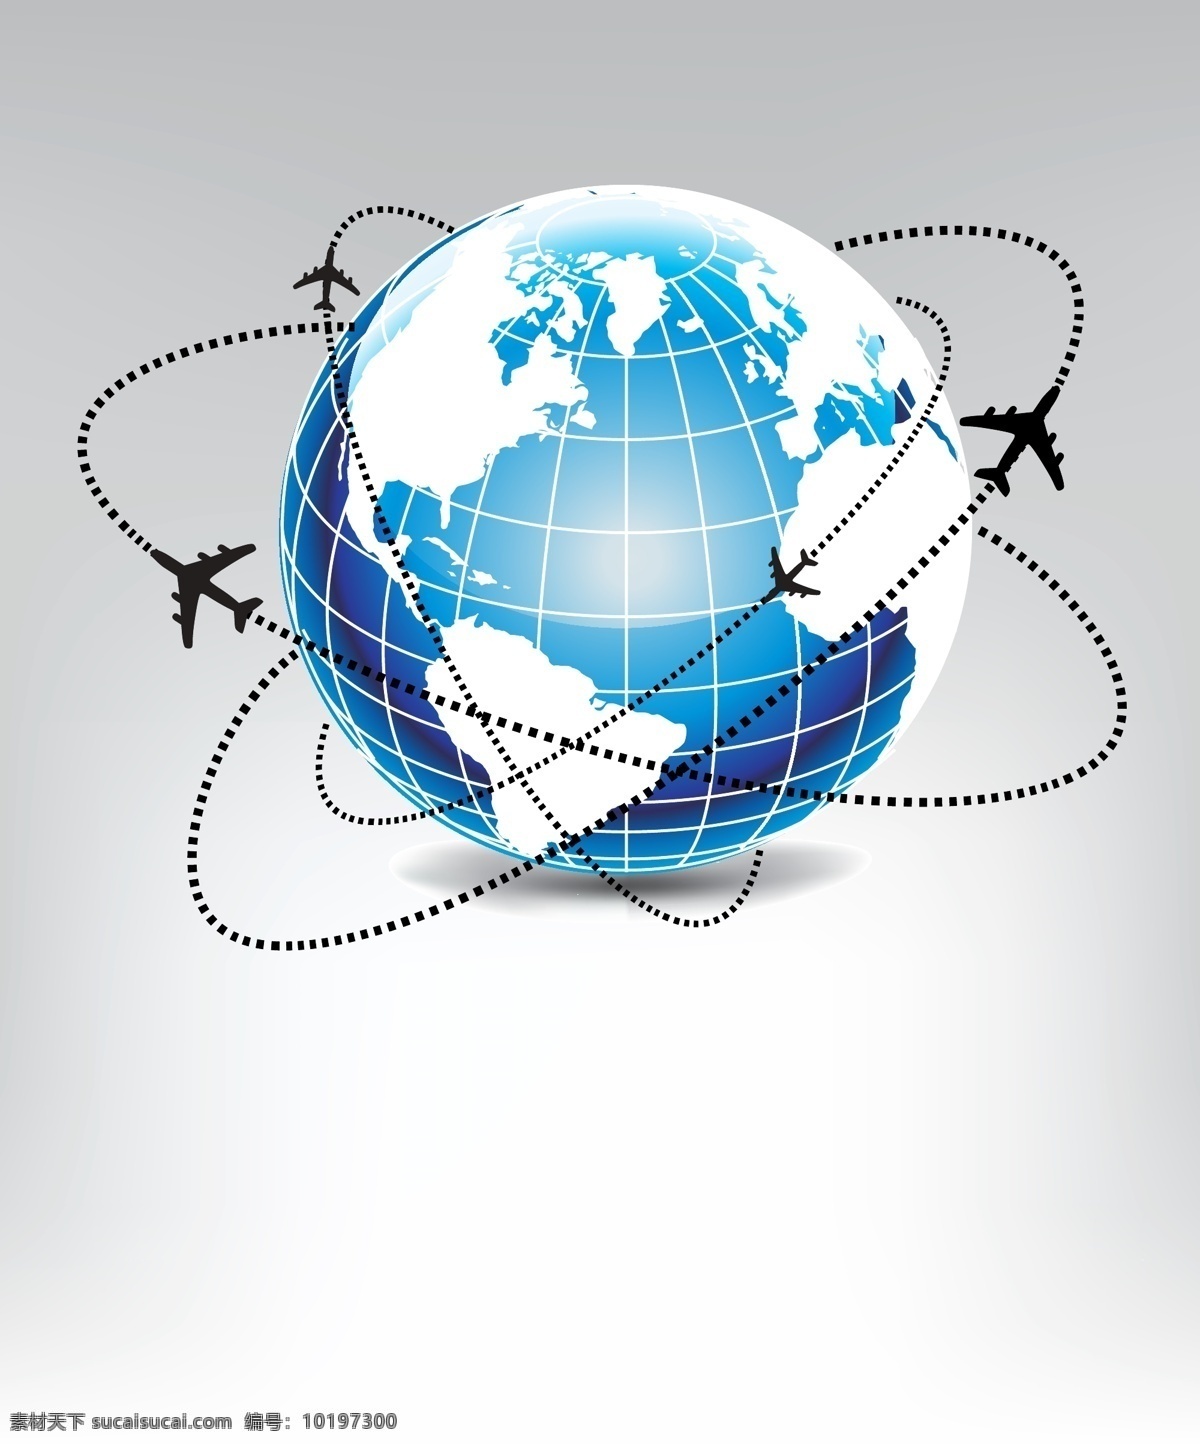 矢量 地球 航行 飞机 商业 背景 蓝色地球 手绘 旅游 海报 科技 科幻 商务